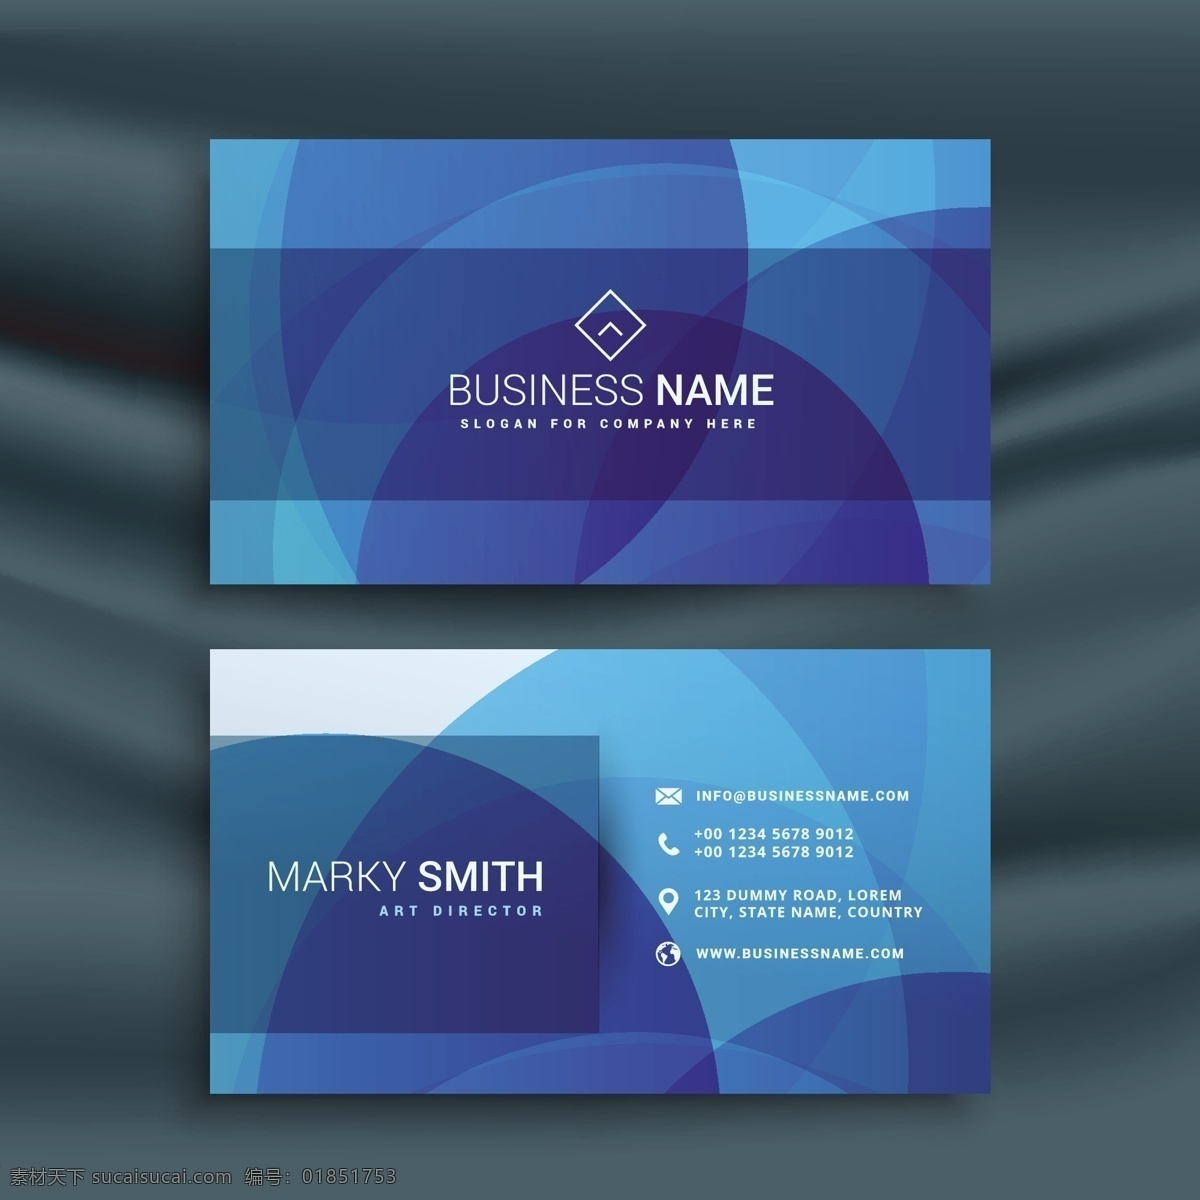 现代 抽象 蓝色 名片设计 商标 名片 商务 卡片 模板 办公室 布局 展示 优雅 文具 公司 联系 创意 品牌 印刷品